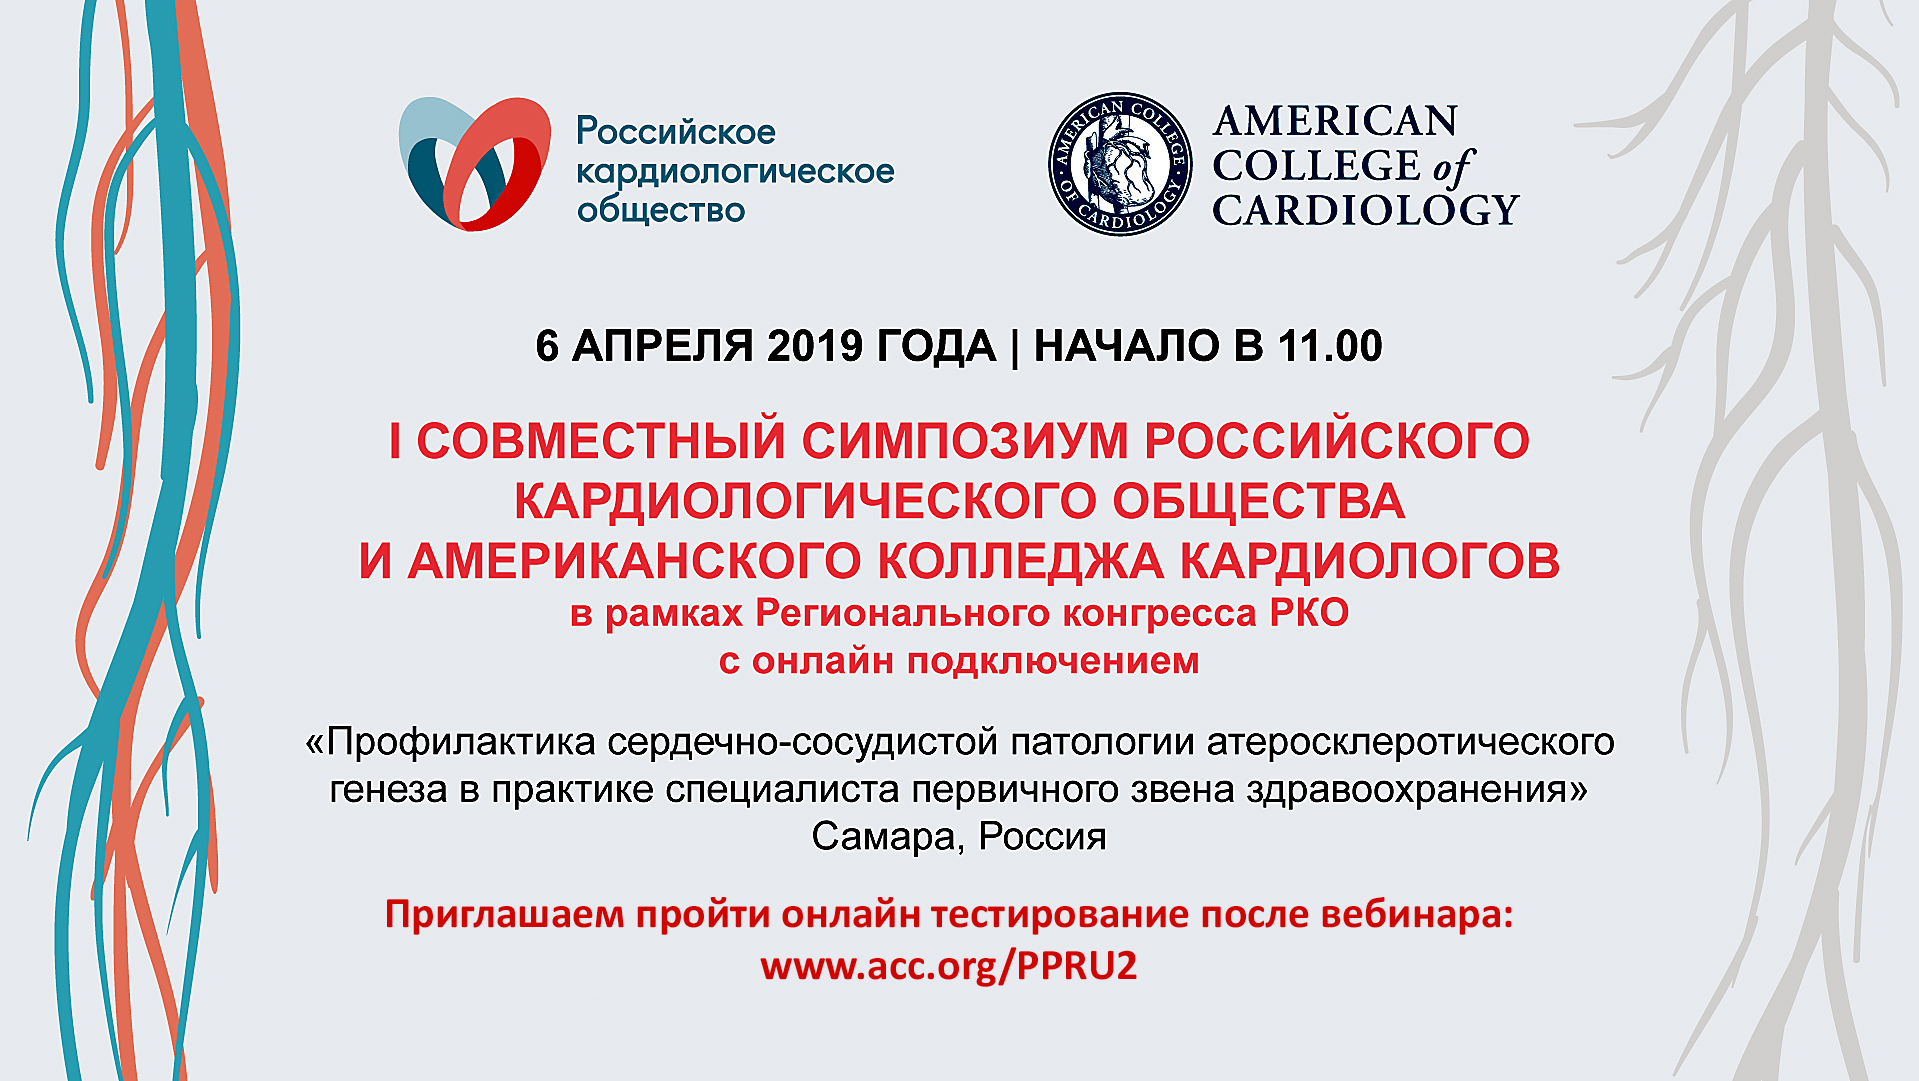 Сайт российского кардиологического. Российское кардиологическое общество. Российское кардиологическое сообщество. Российское кардиологическое общество лого. РКО эмблема российское кардиологическое общество.